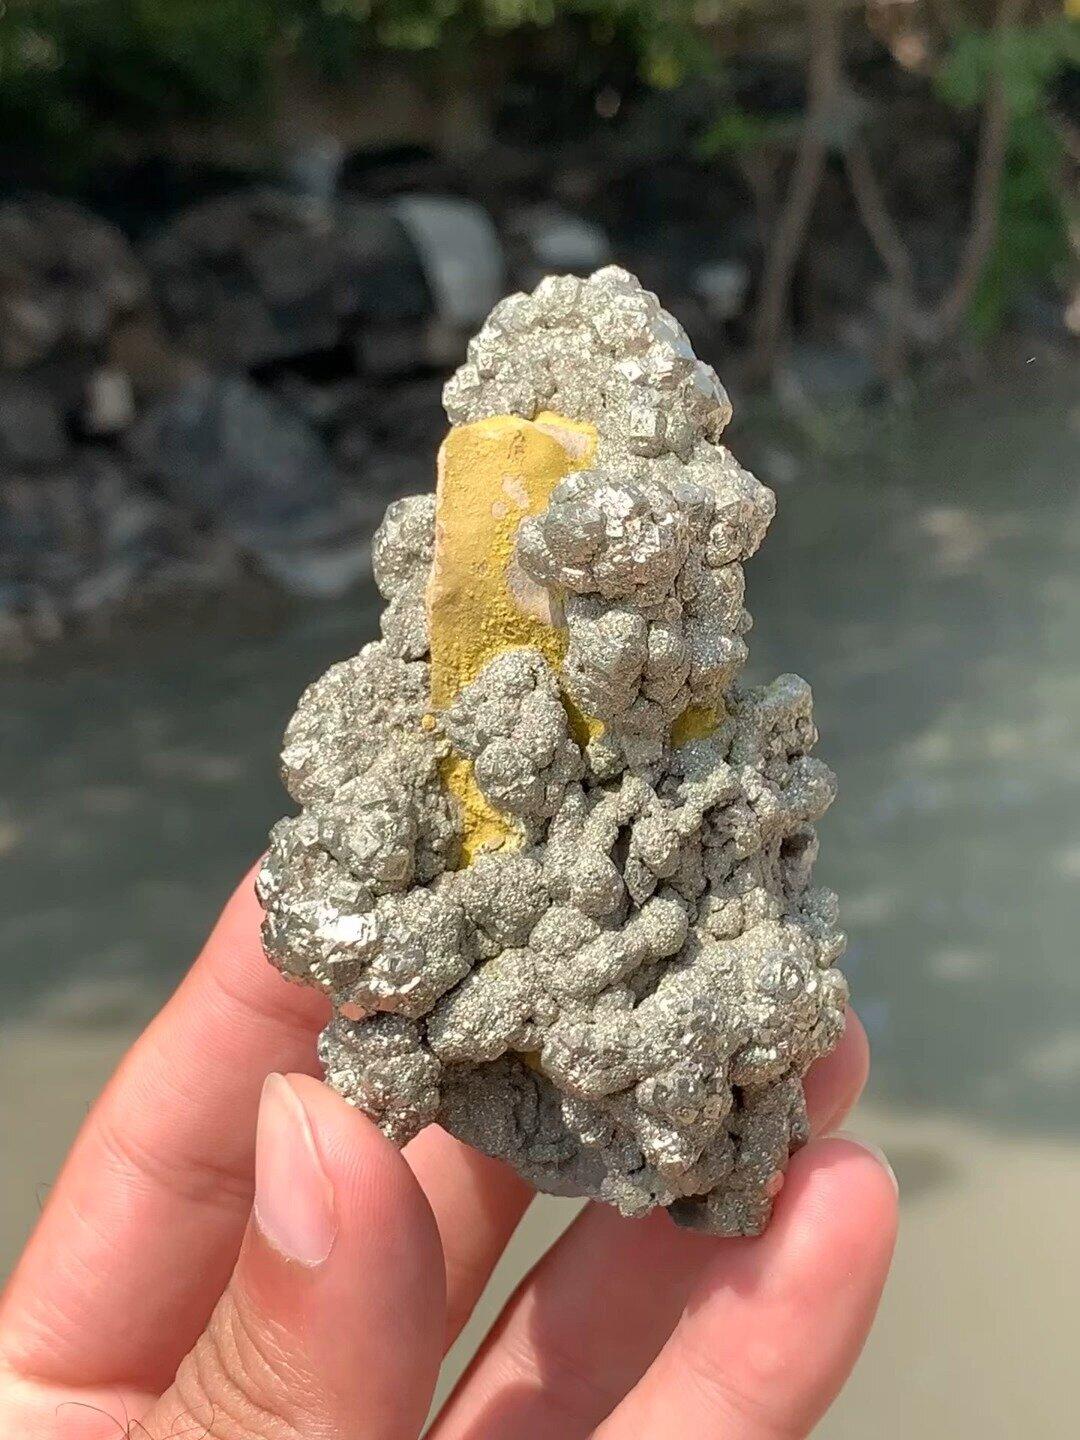 Non taillé Riches cristaux pyrite de couleur dorée uniques sur matrice de limonite d'Afghanistan en vente